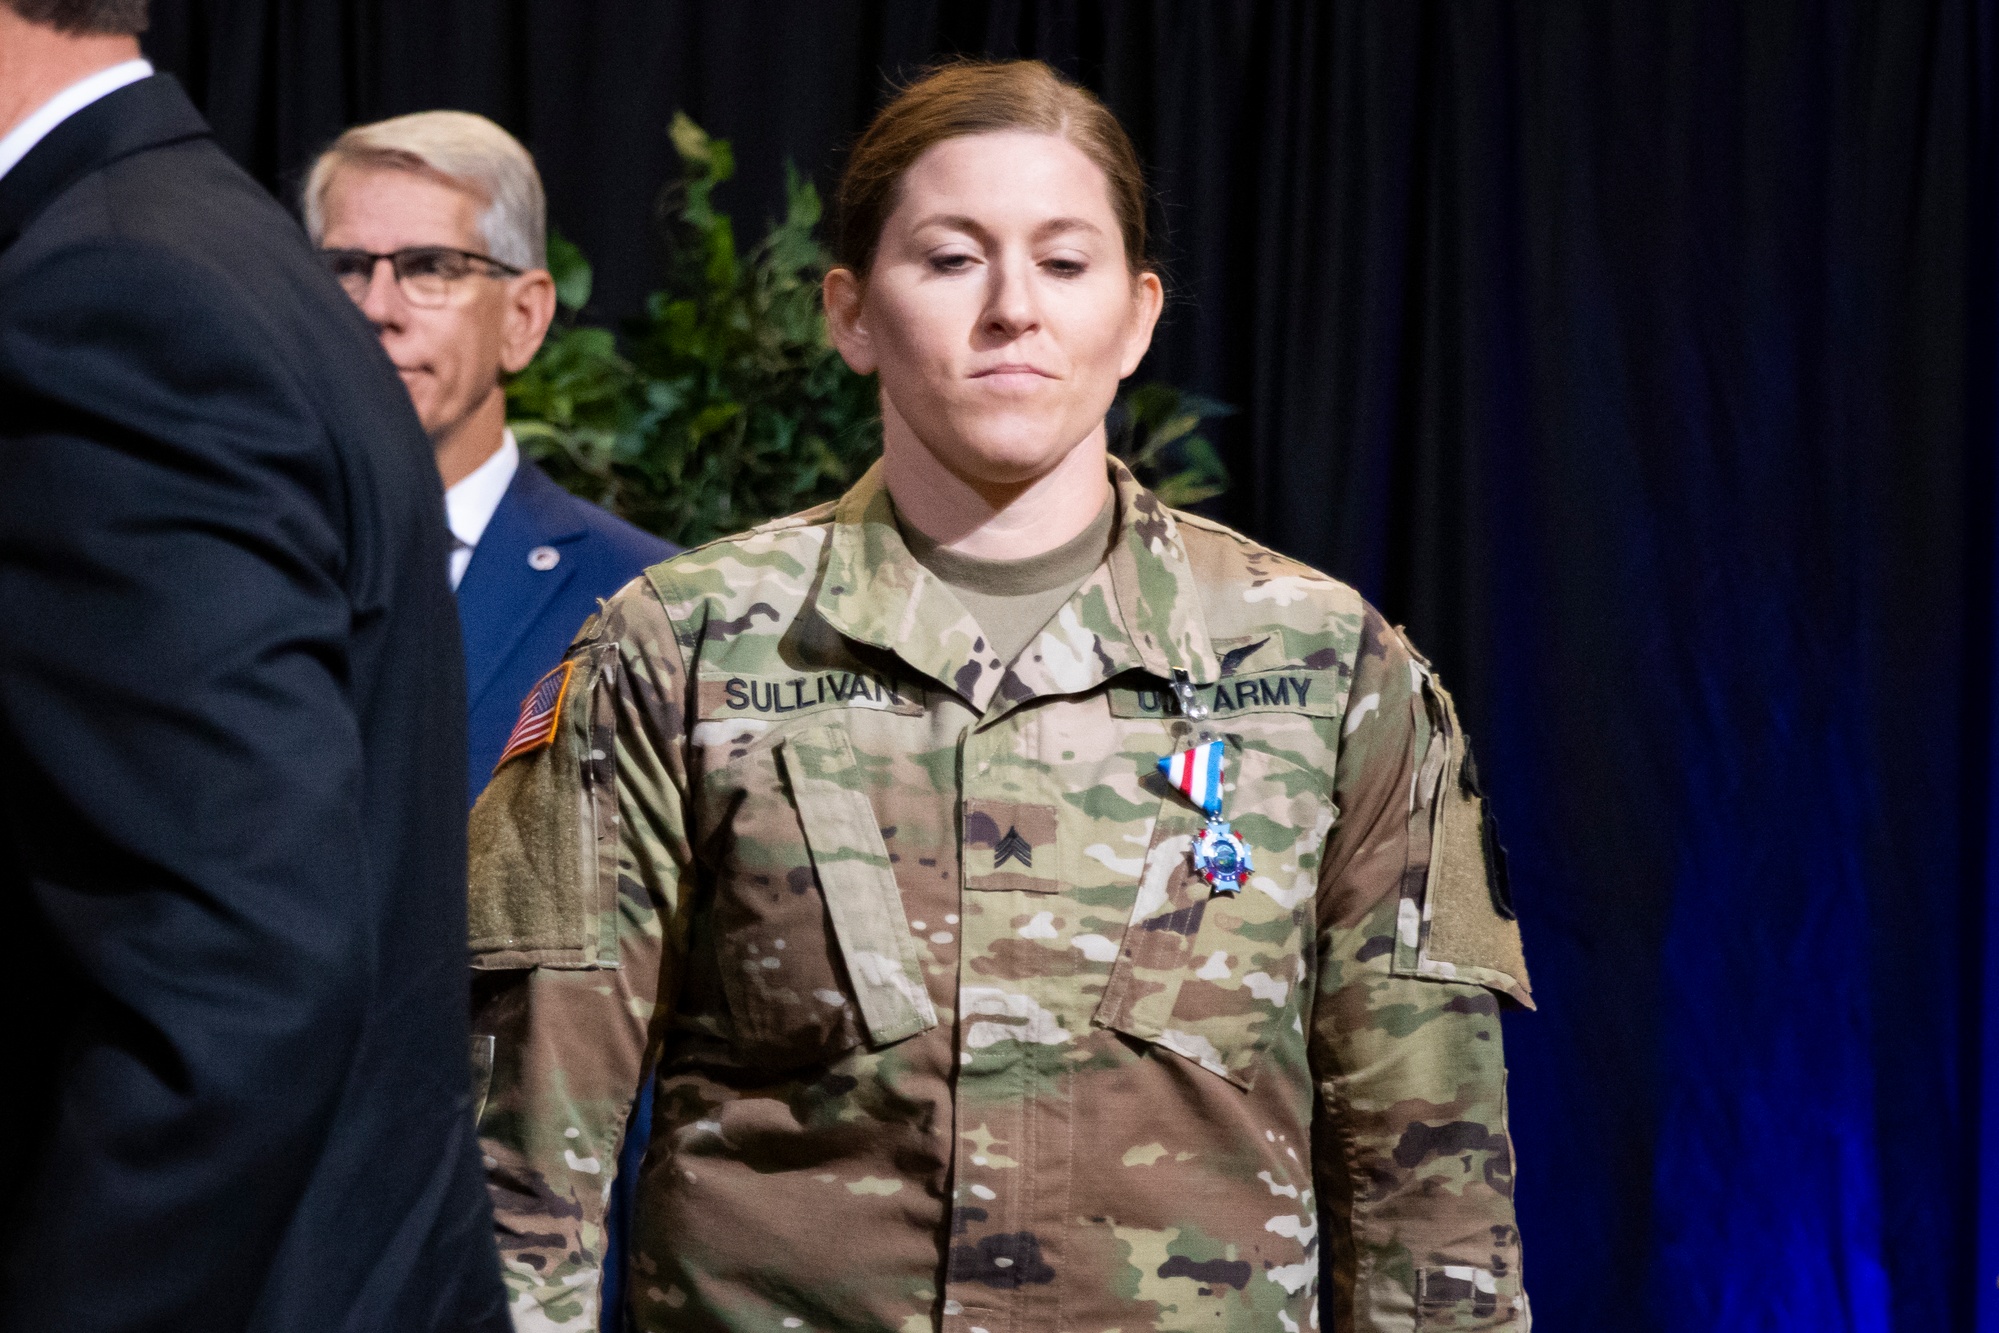 DVIDS - Images - Nebraska Adjutant General Change of Command Ceremony  [Image 6 of 10]